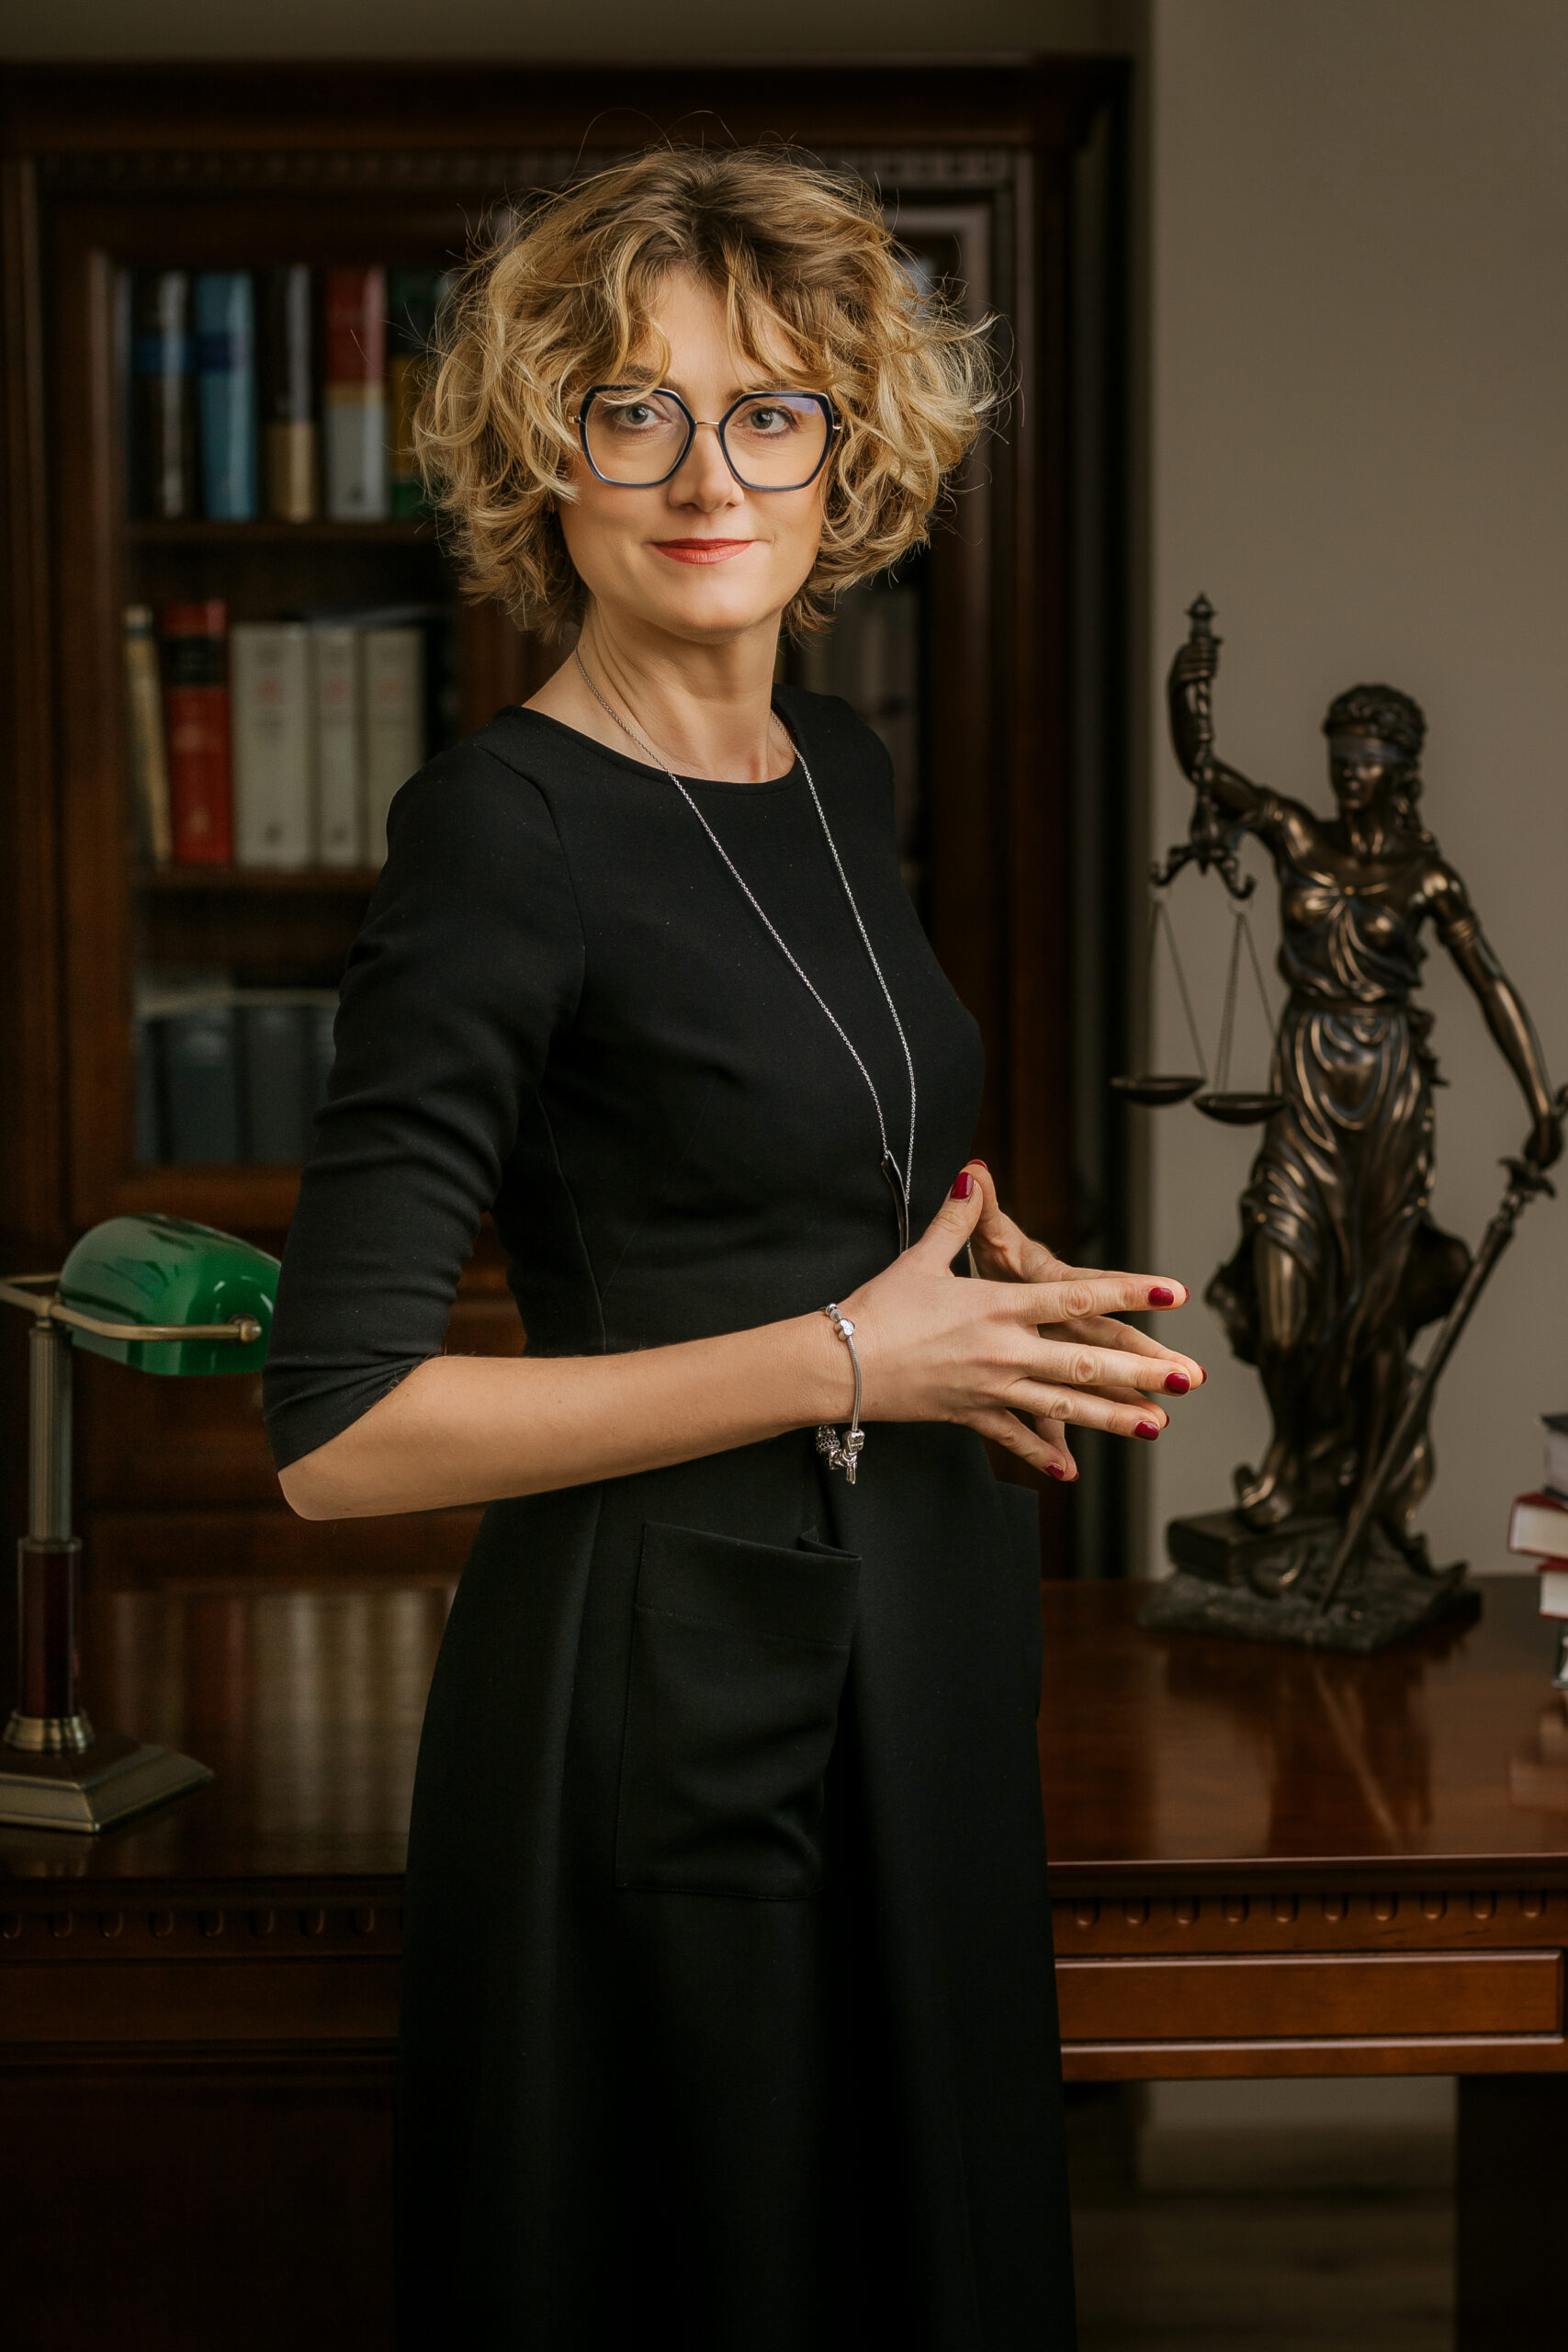 Anna Gorzka - Augustynowicz